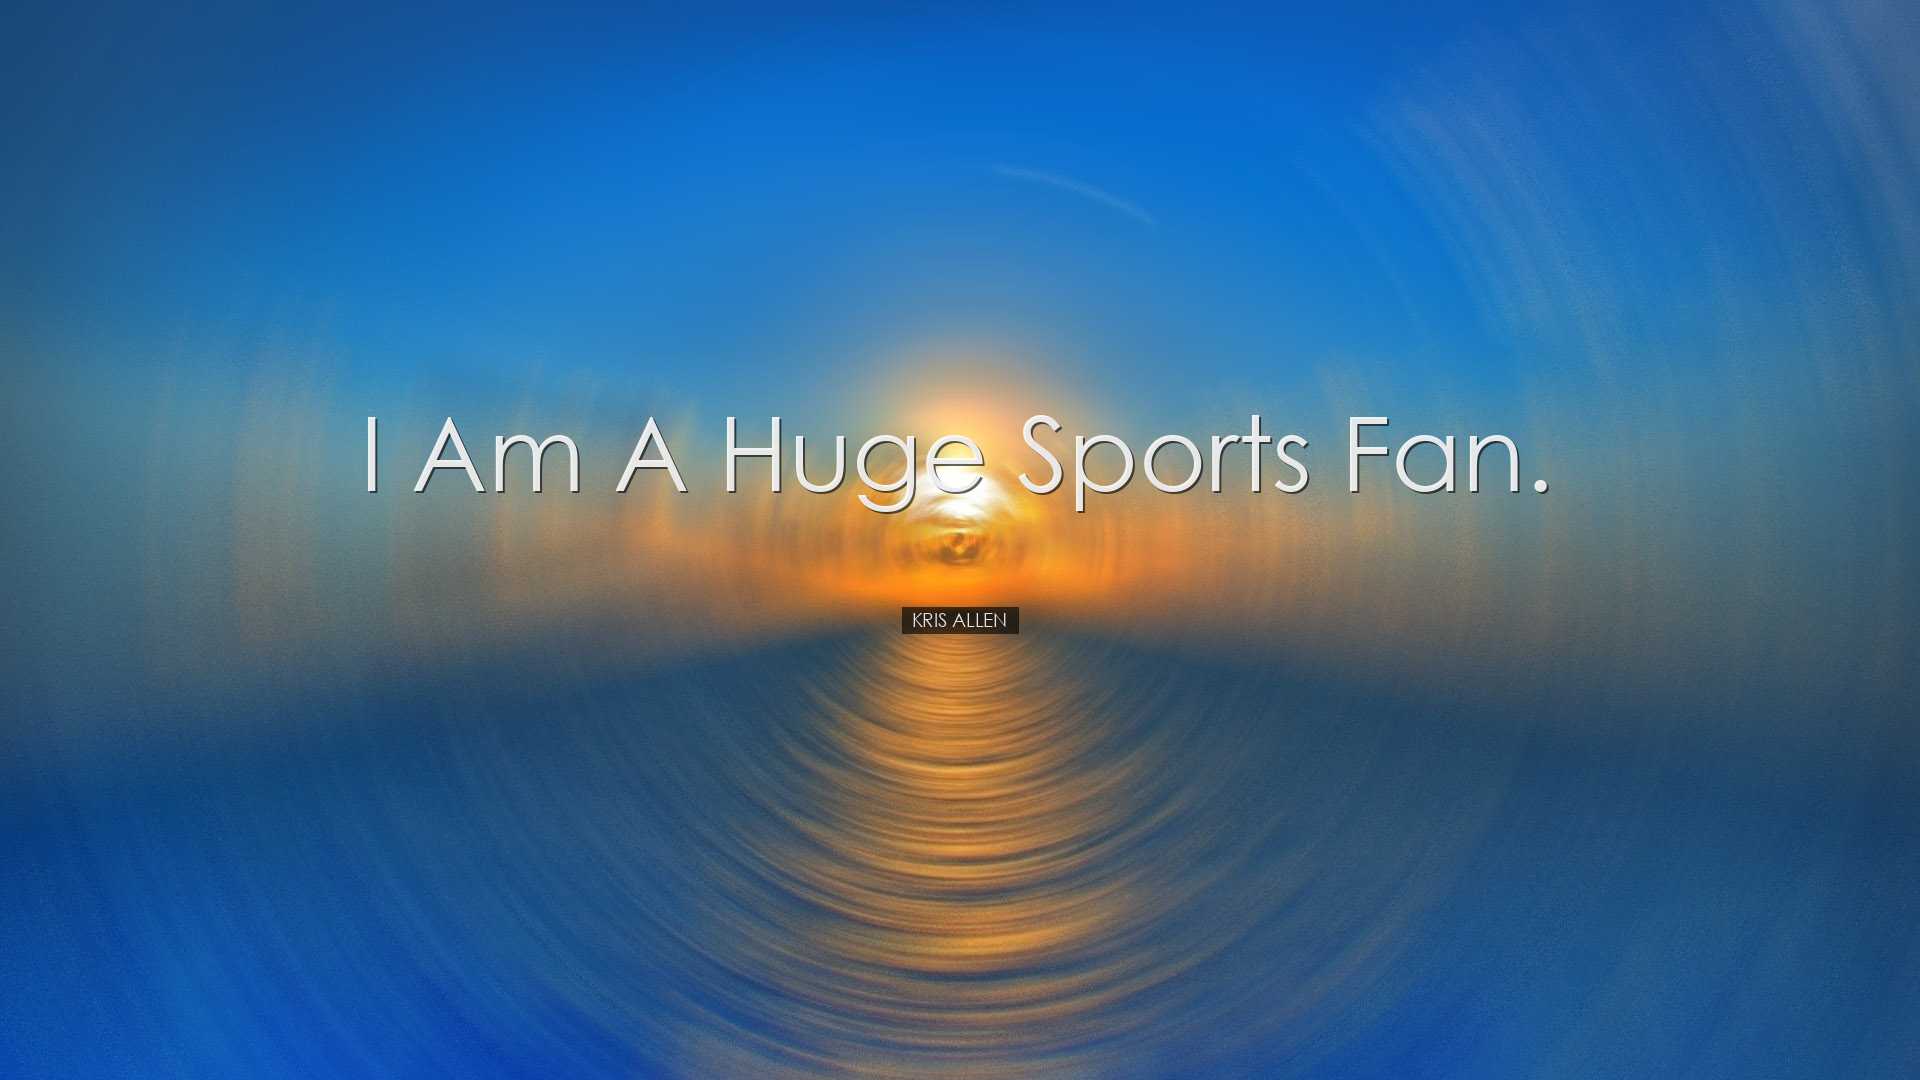 I am a huge sports fan. - Kris Allen